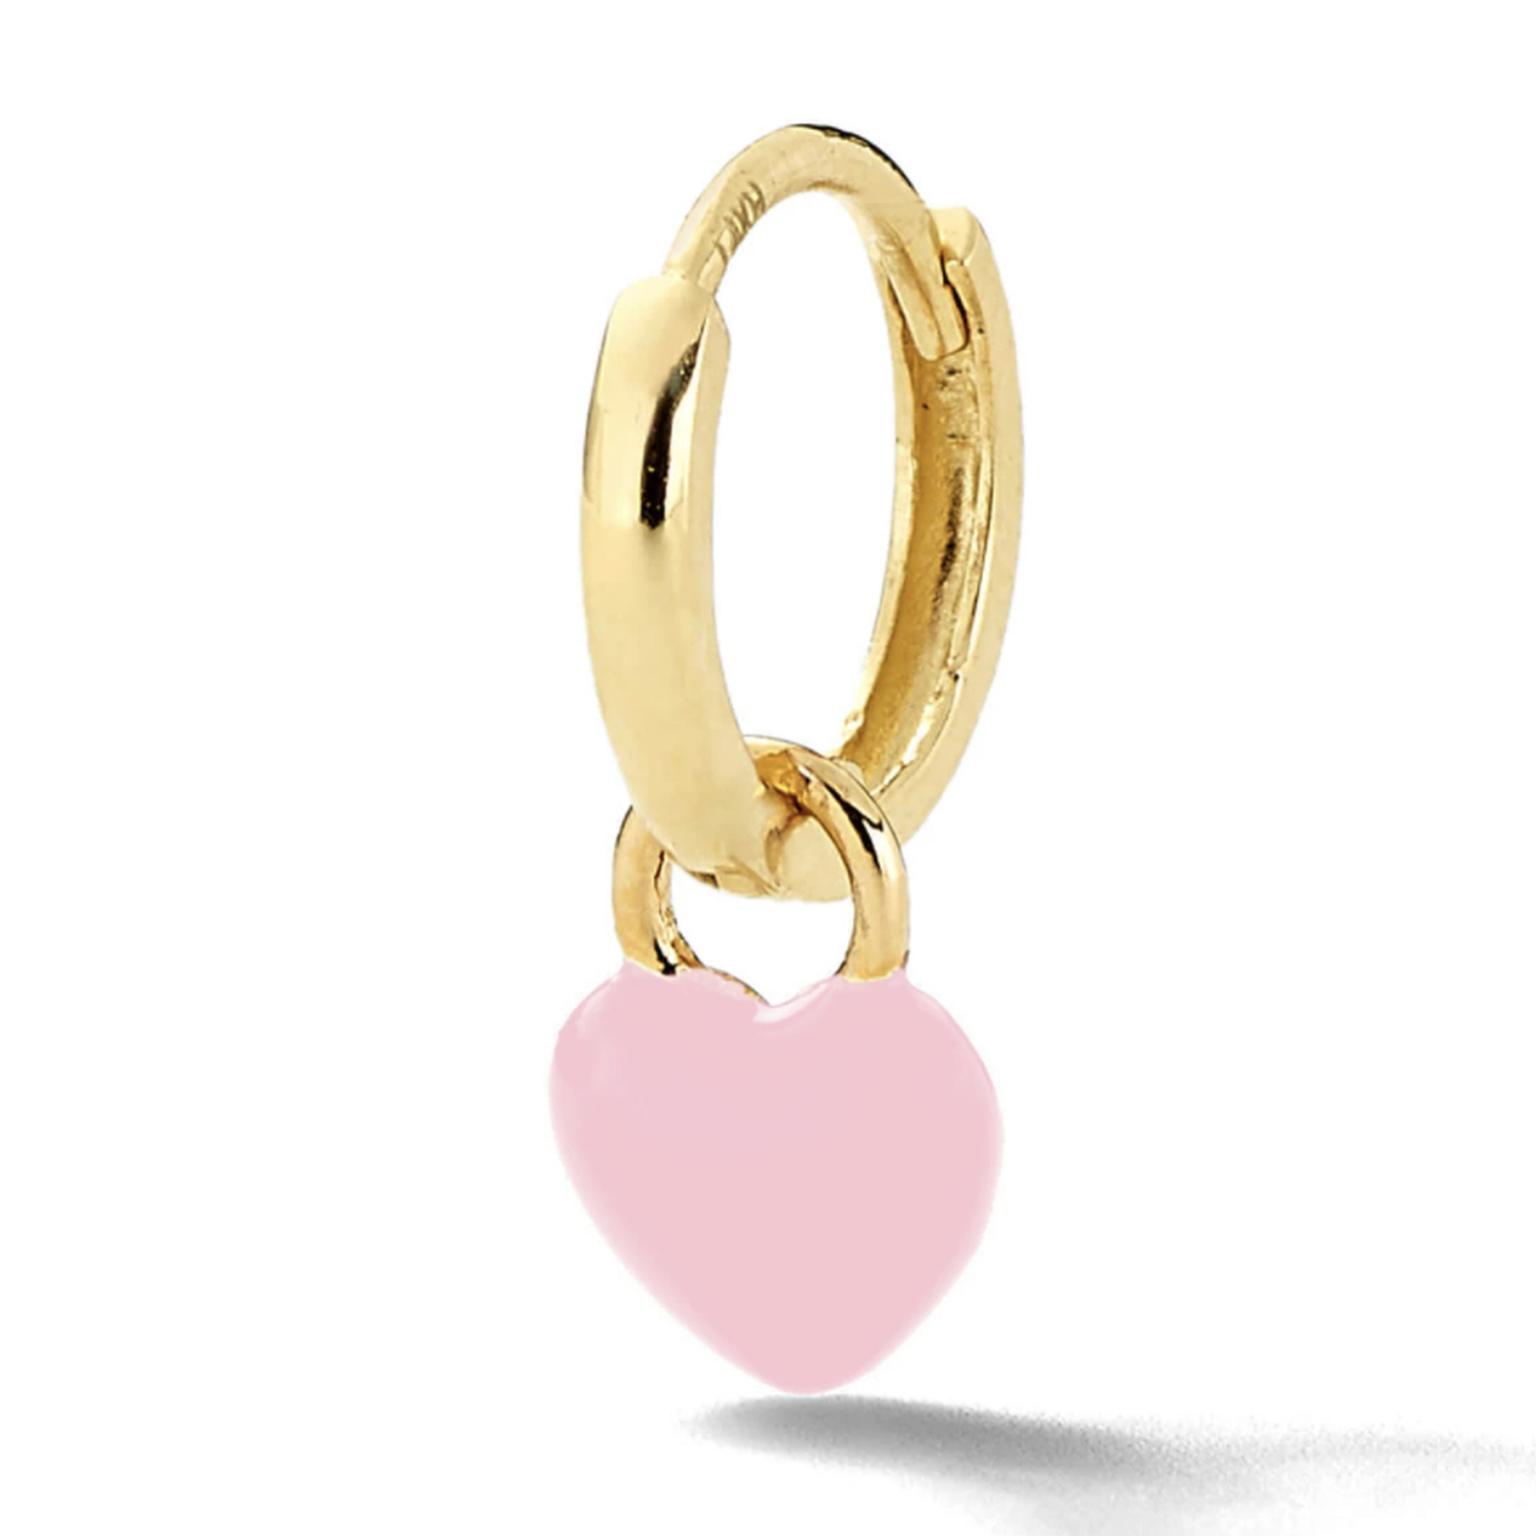 Heart enamel single earring by Alison Lou